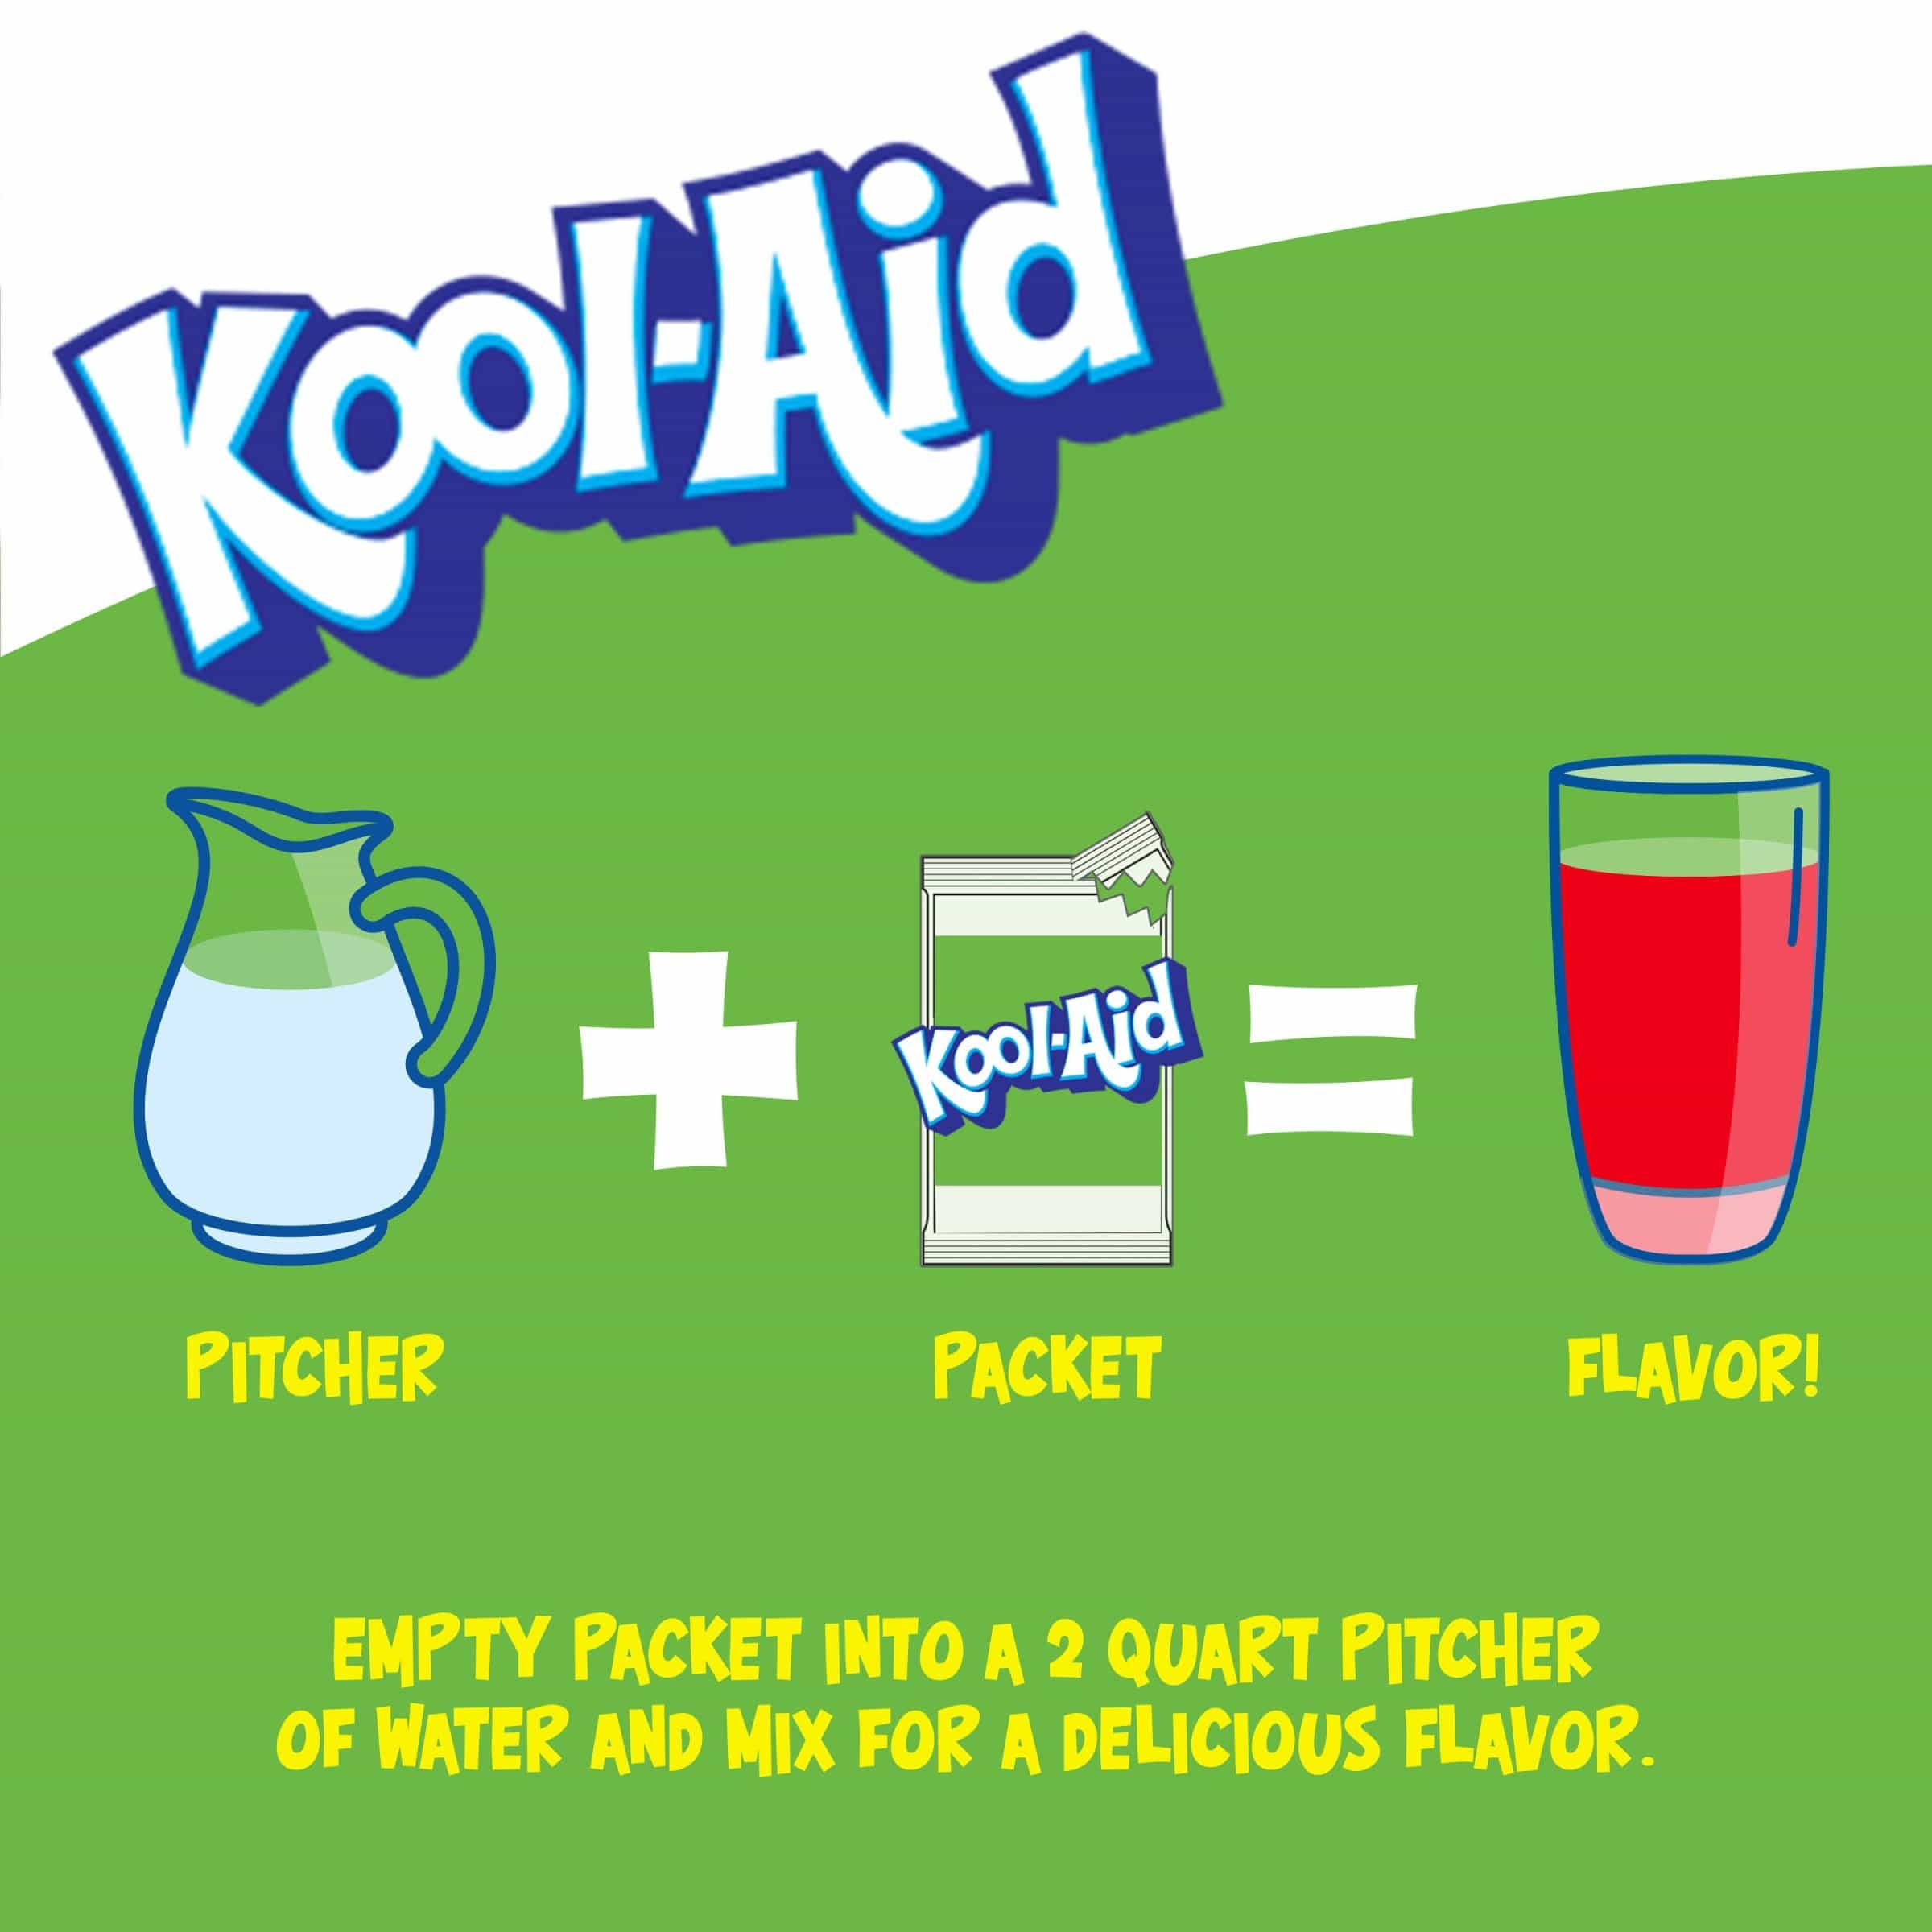 Une affiche blanc au-dessus et vert en-dessous avec une carafe blanche, un paquet de KoolAid et un verre rempli de boisson rouge